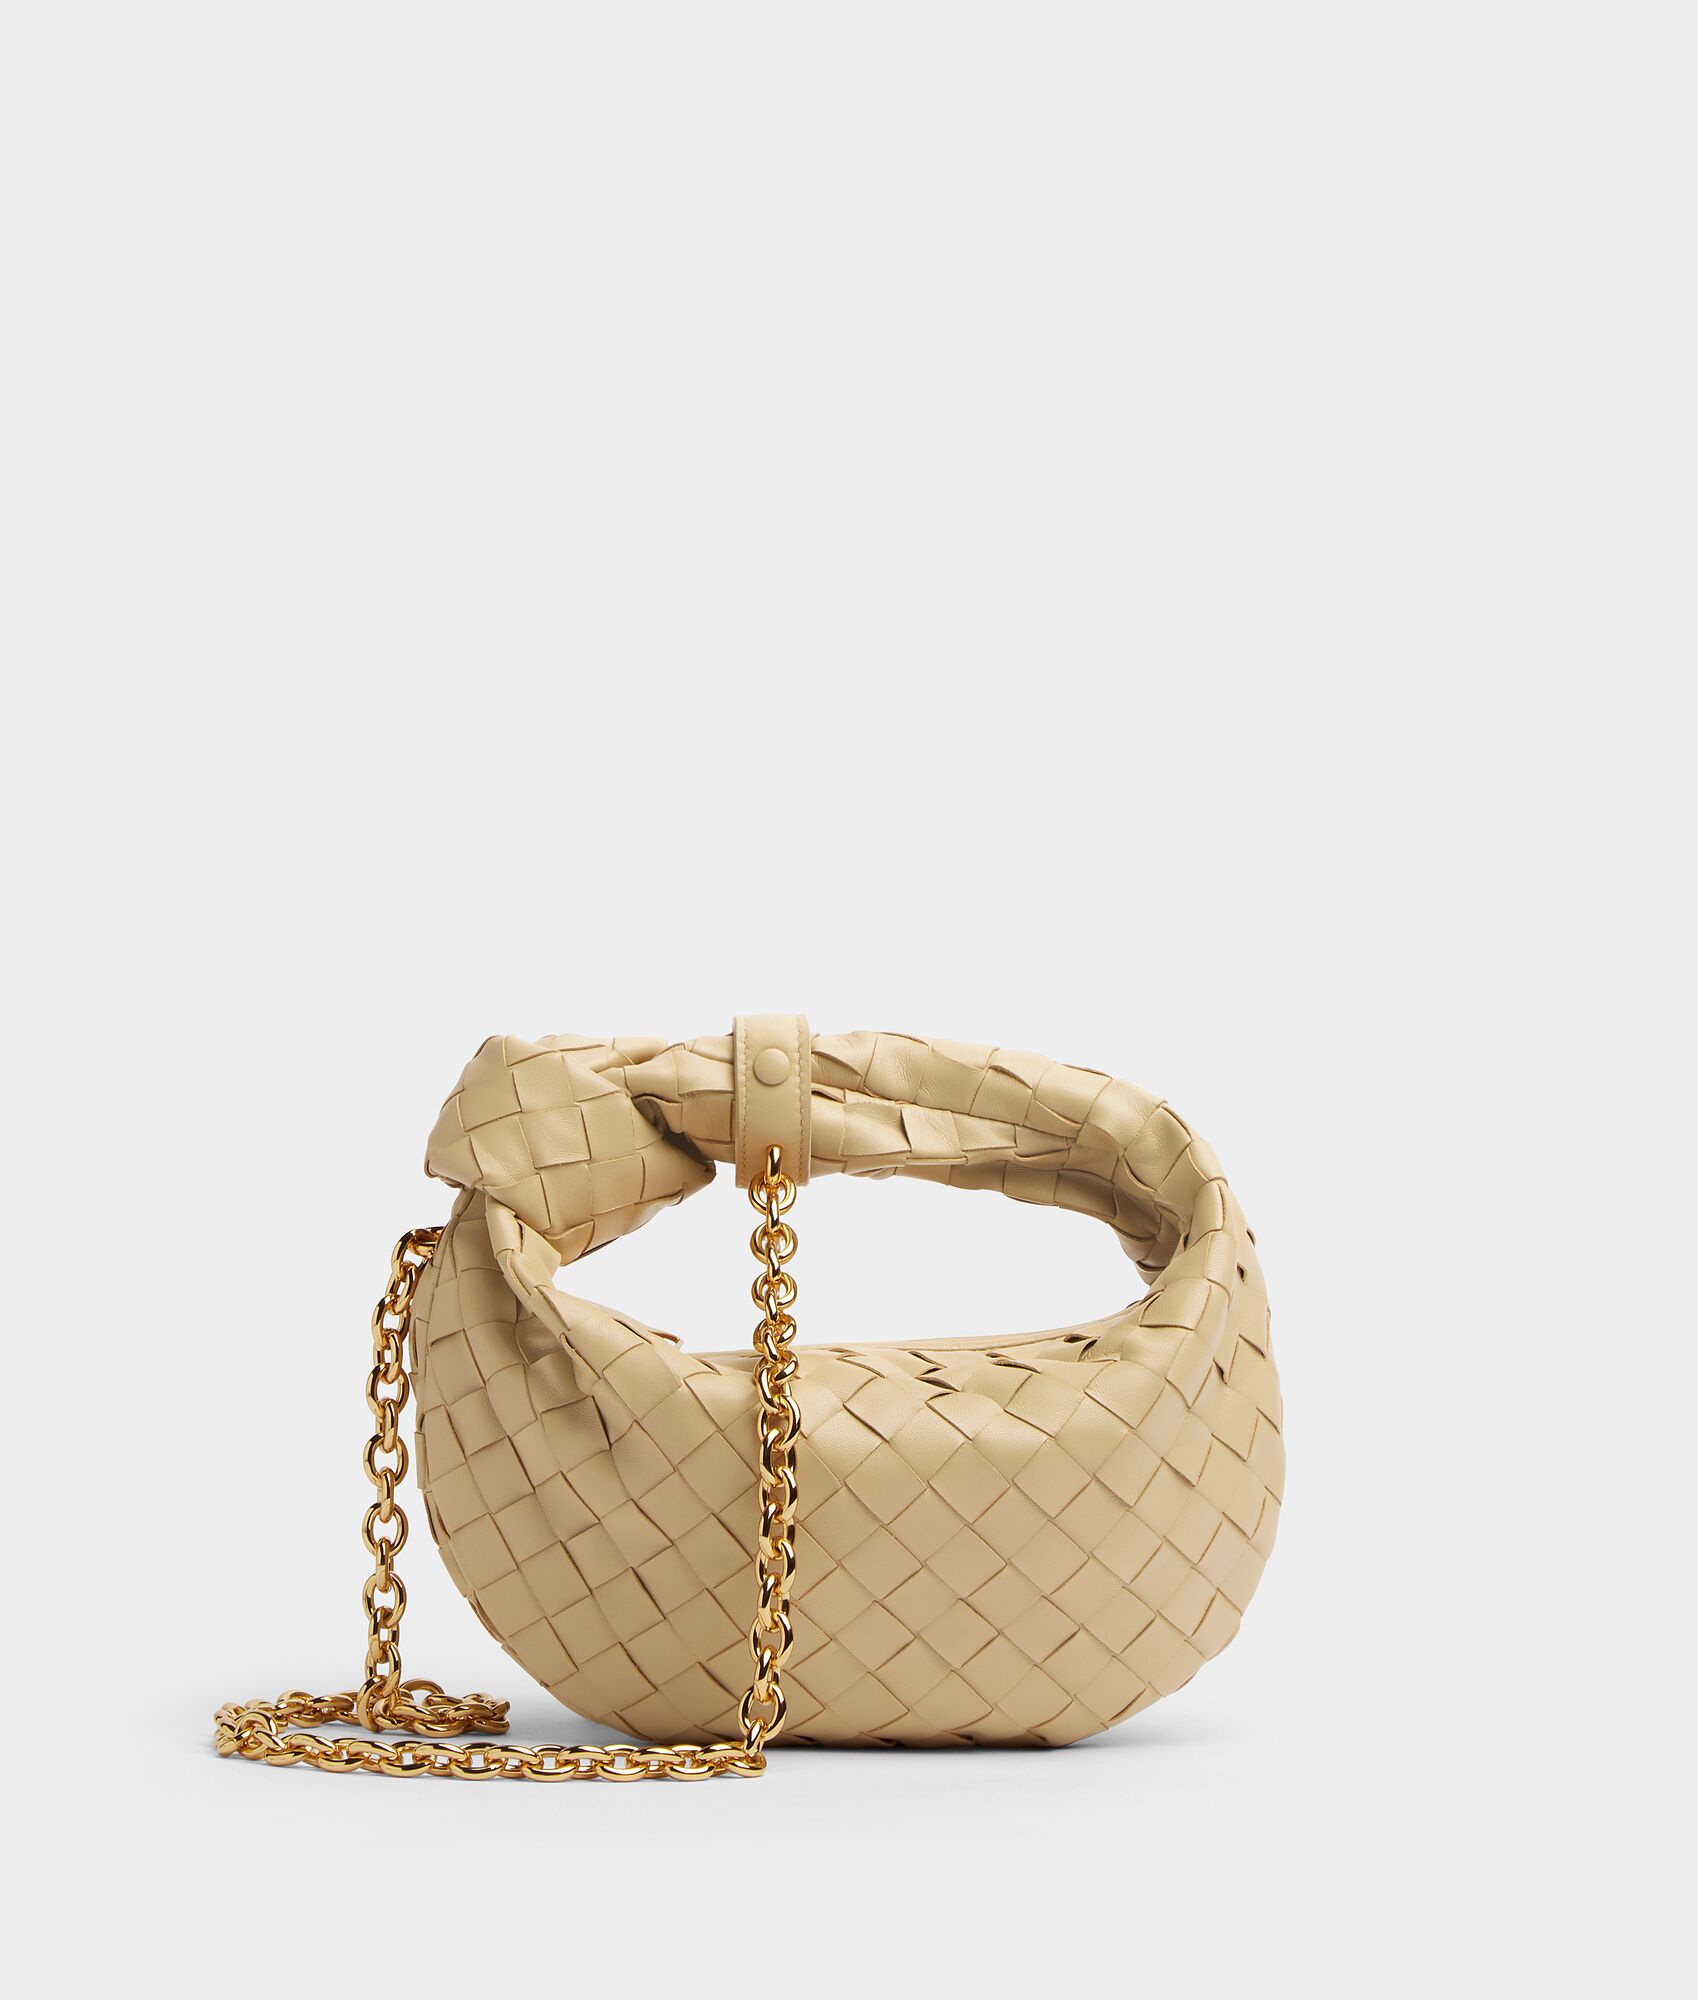 30代女性におすすめのワンランク上の高級ブランドのバッグはBOTTEGA VENETAのミニ ジョディ